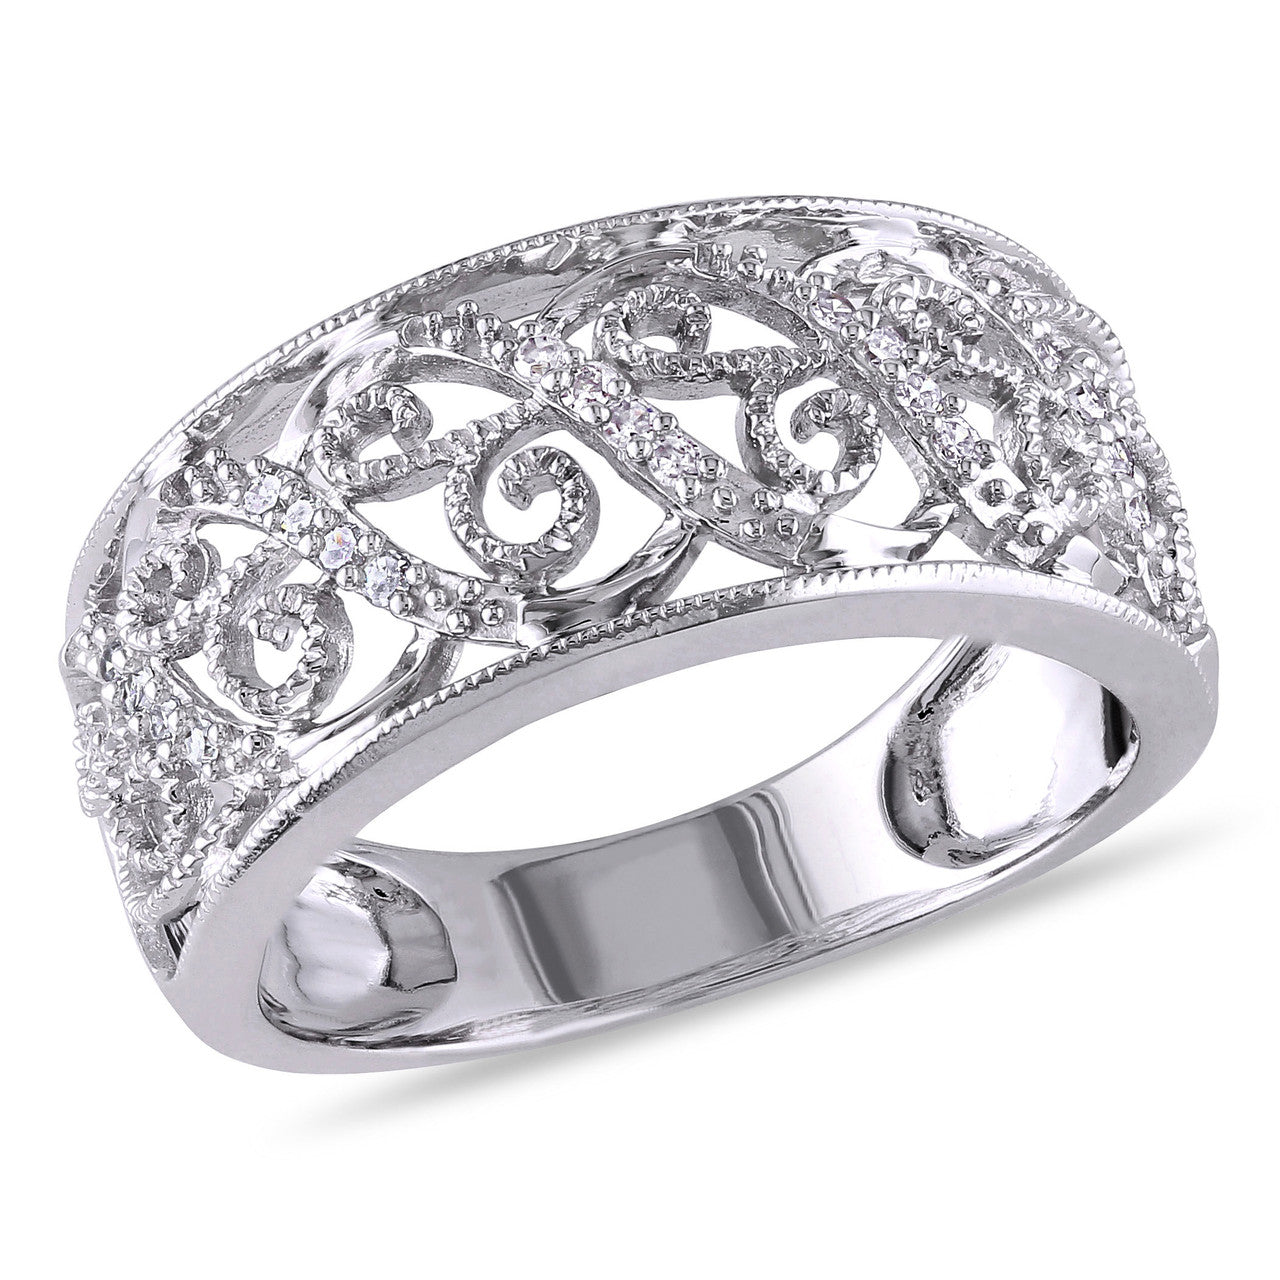 Ice Jewellery 1/10 CT Diamond TW Ring 14k White Gold - 75000001970 | Ice Jewellery Australia